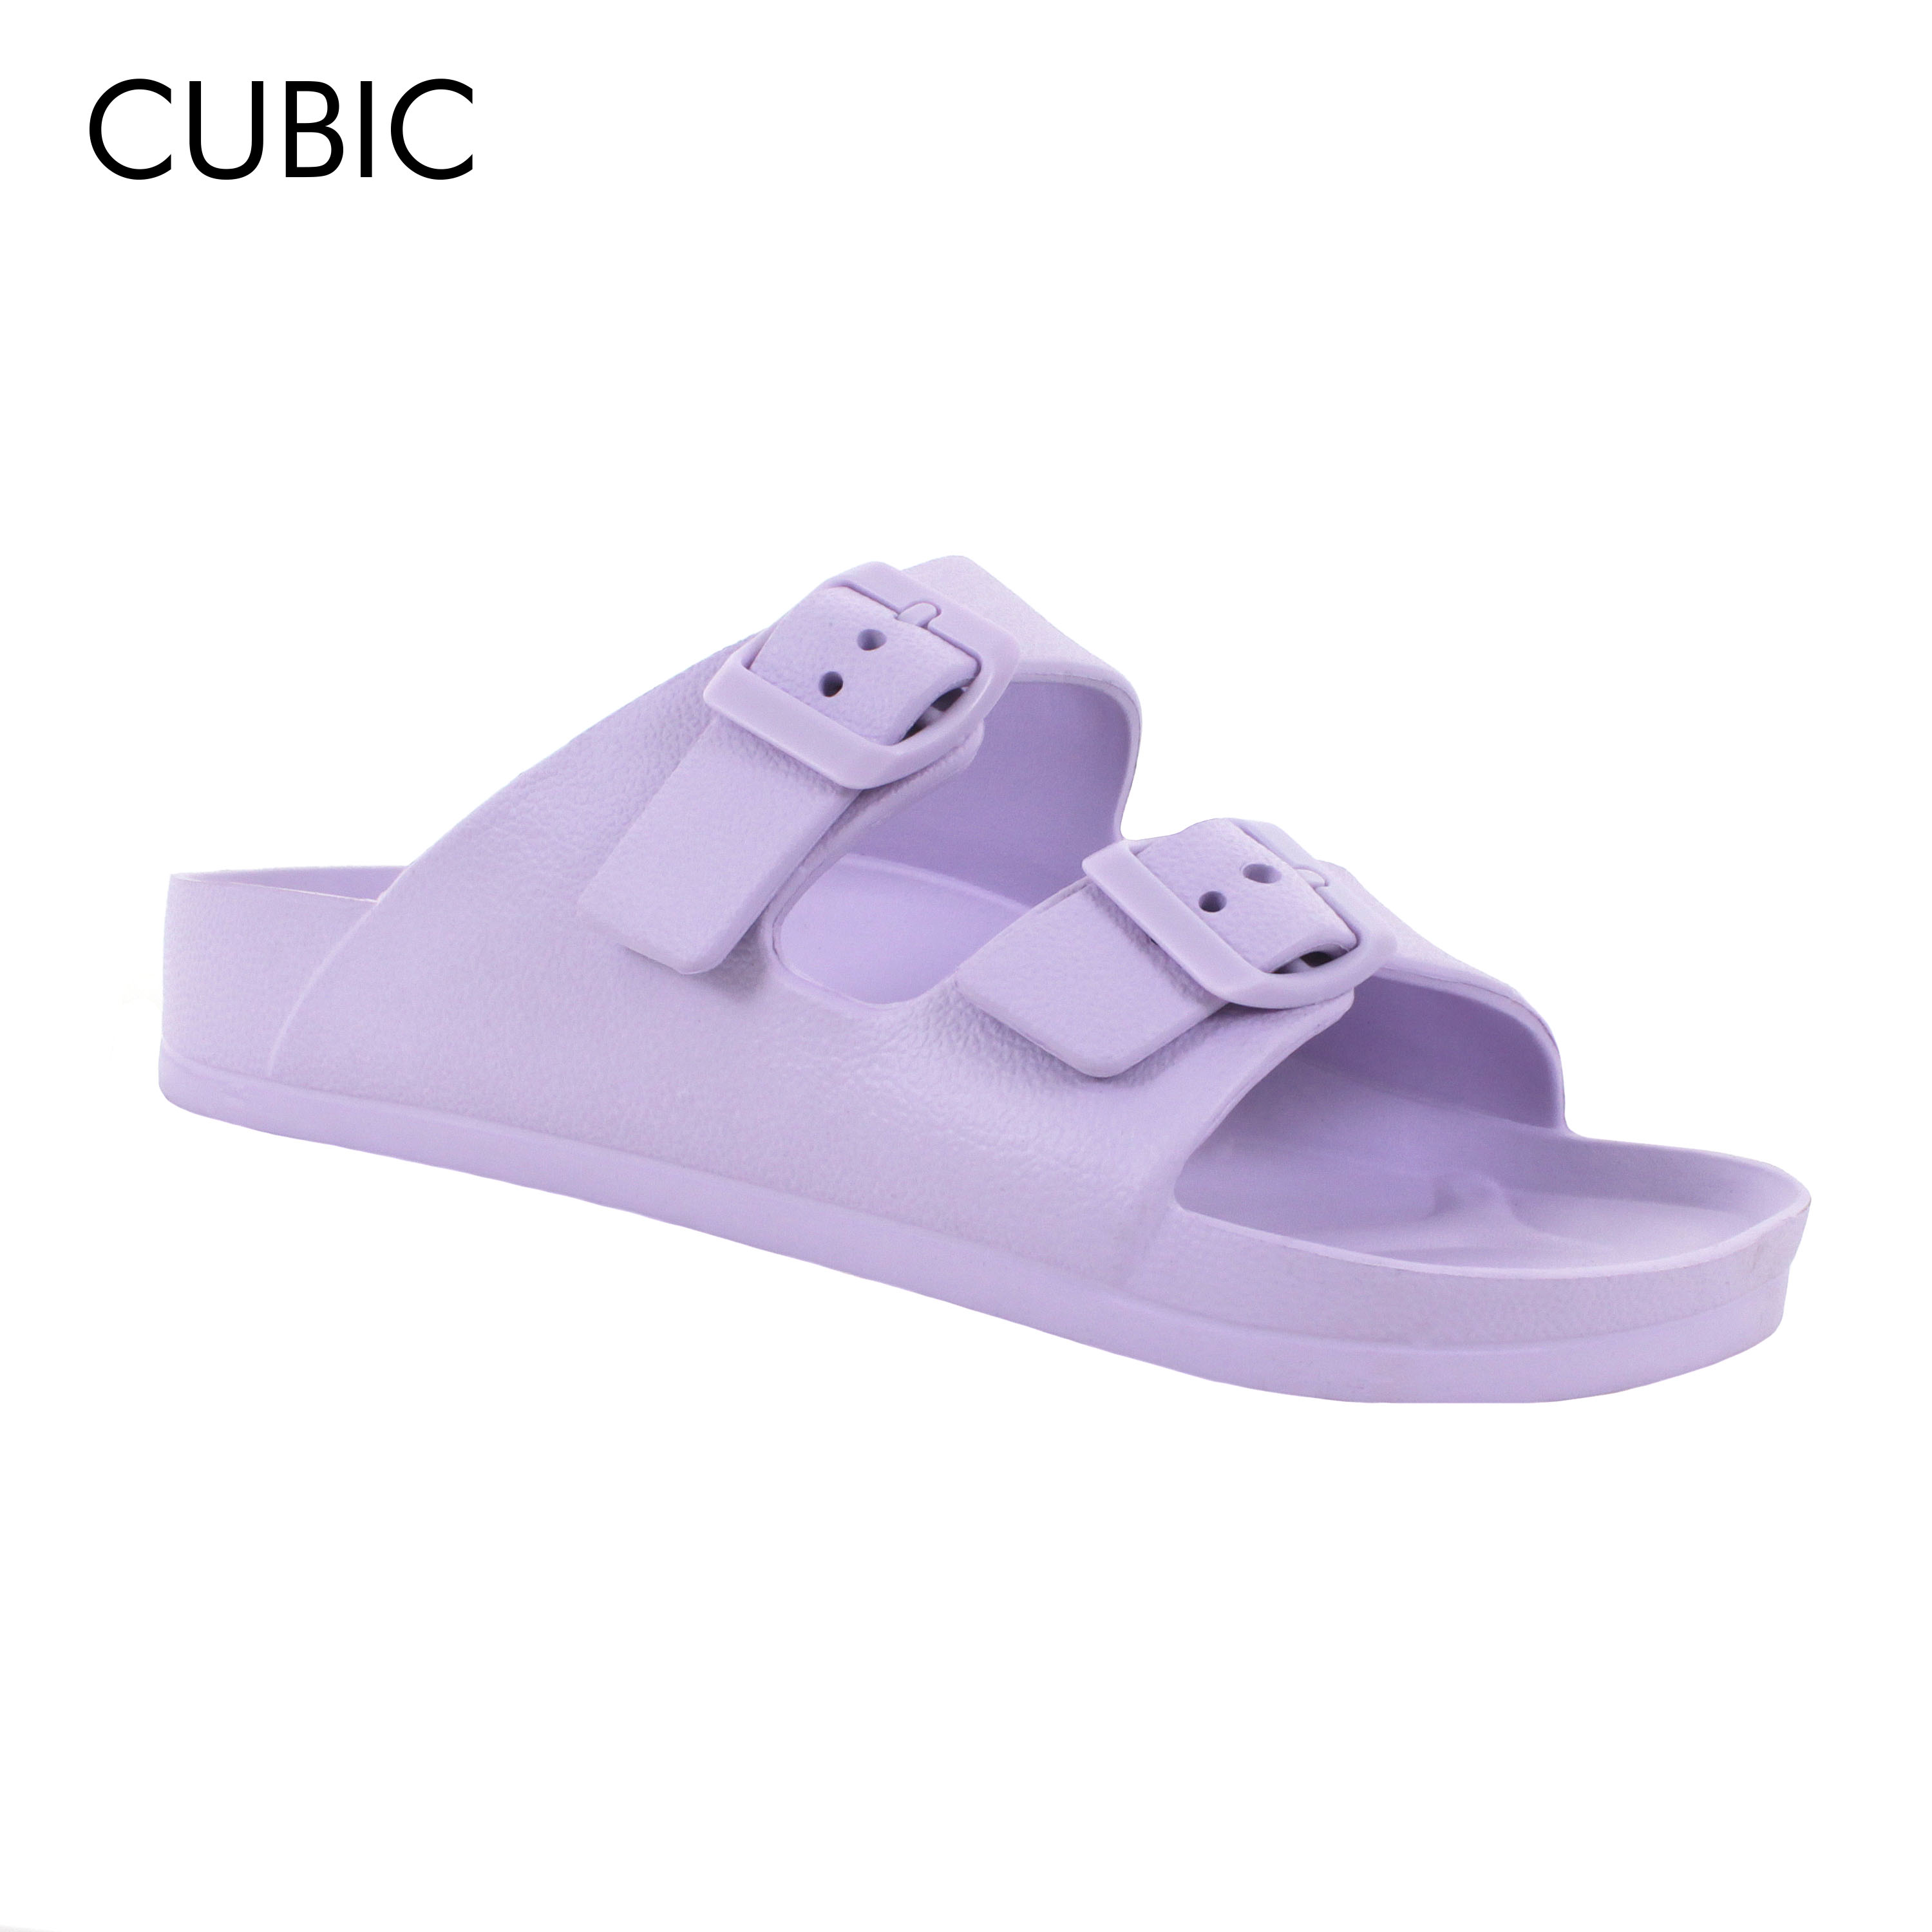 Cubic Men Plain Slides Slip On Sandals Slippers for Men - CMFS003